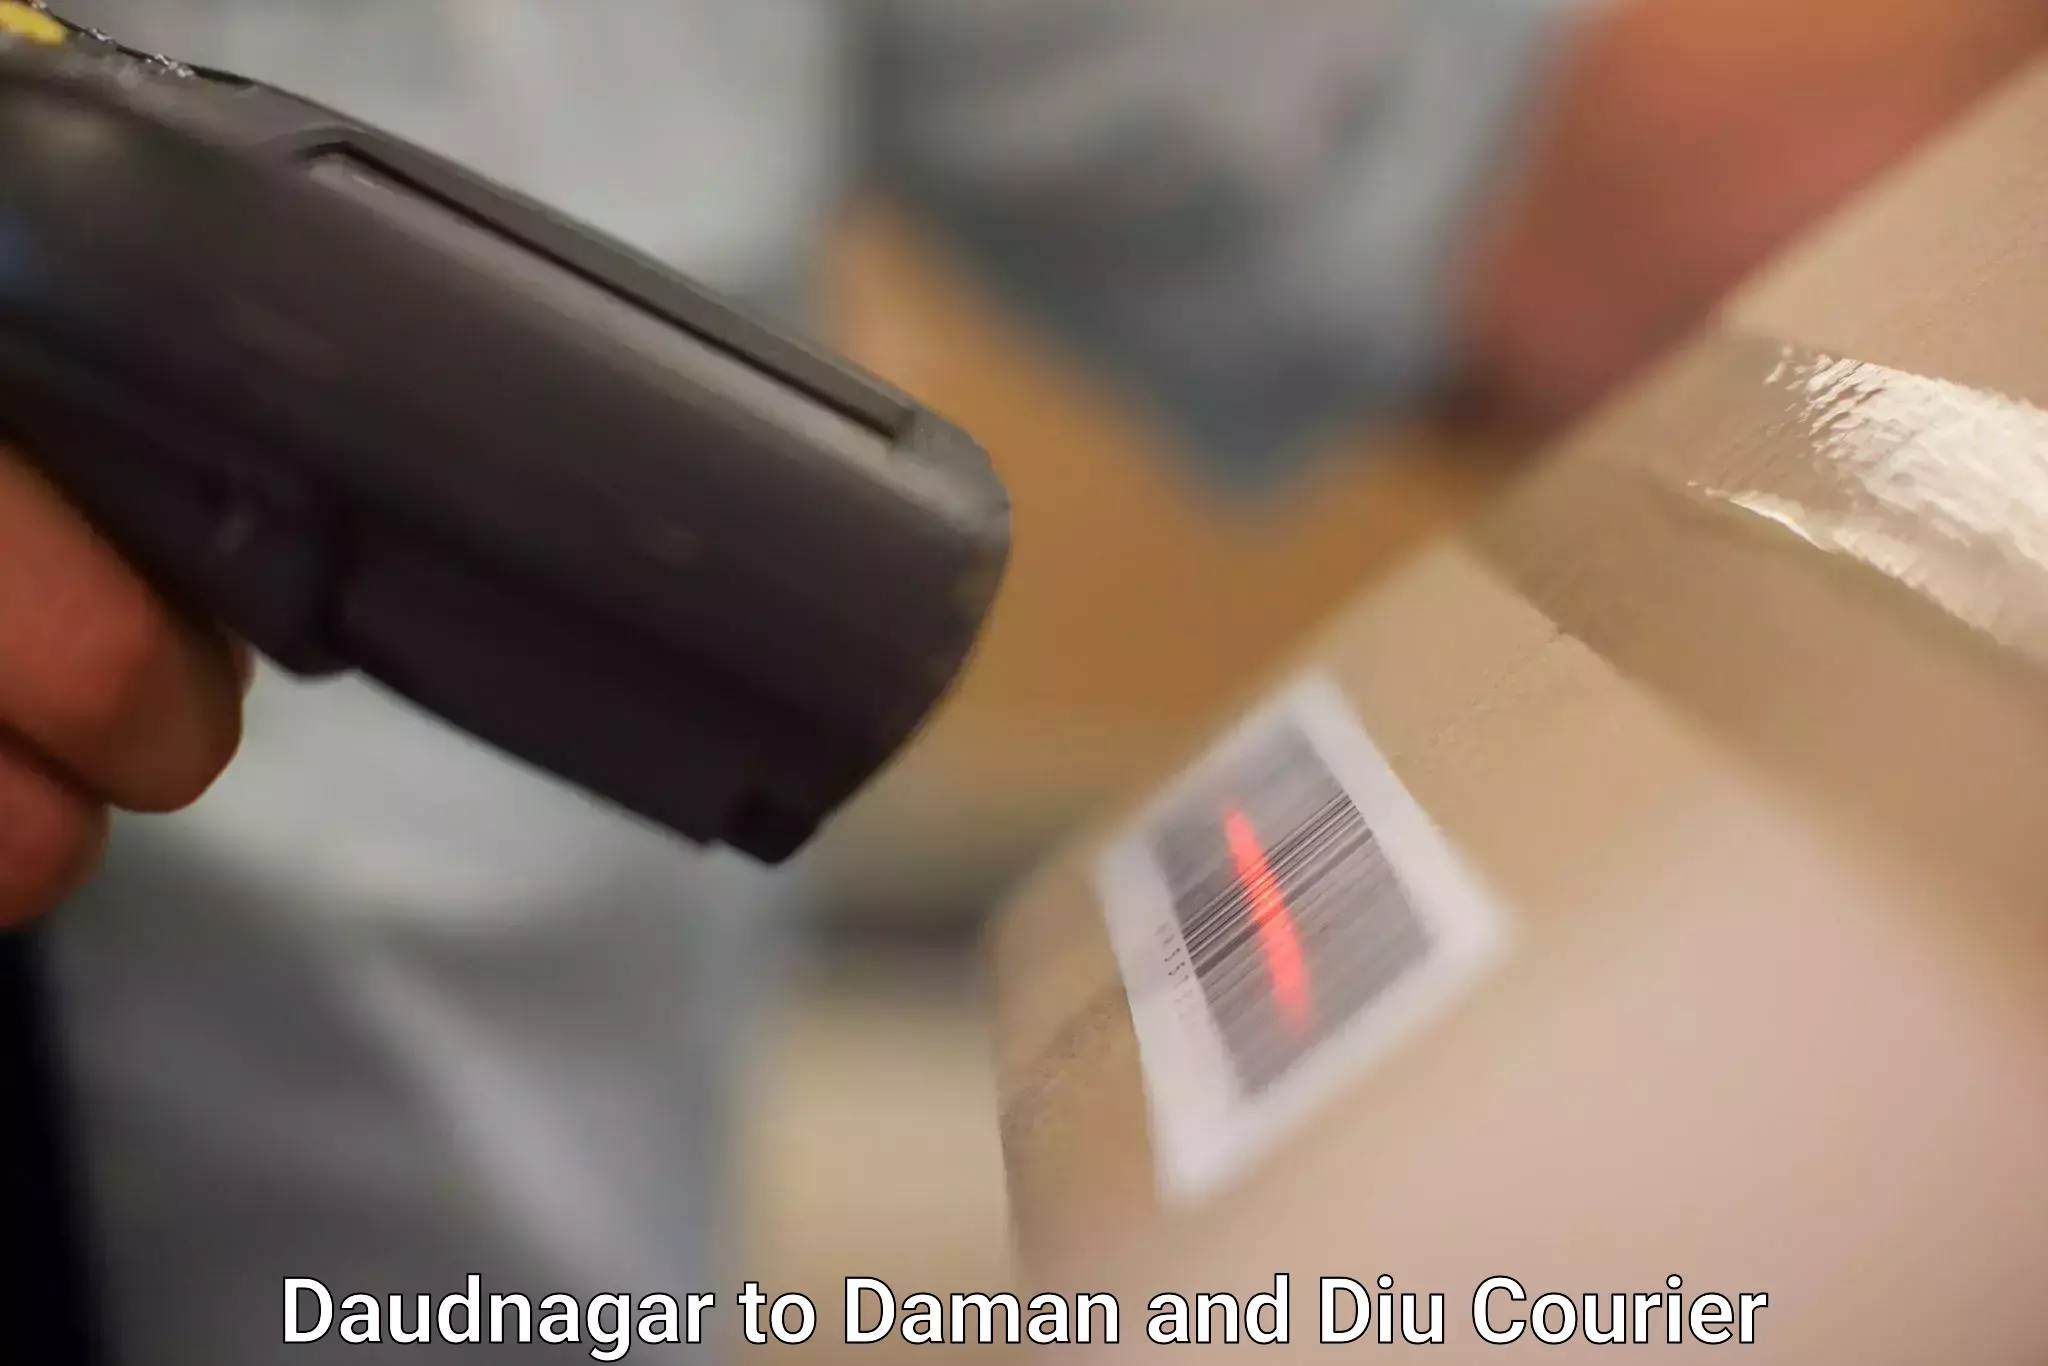 Individual parcel service Daudnagar to Daman and Diu